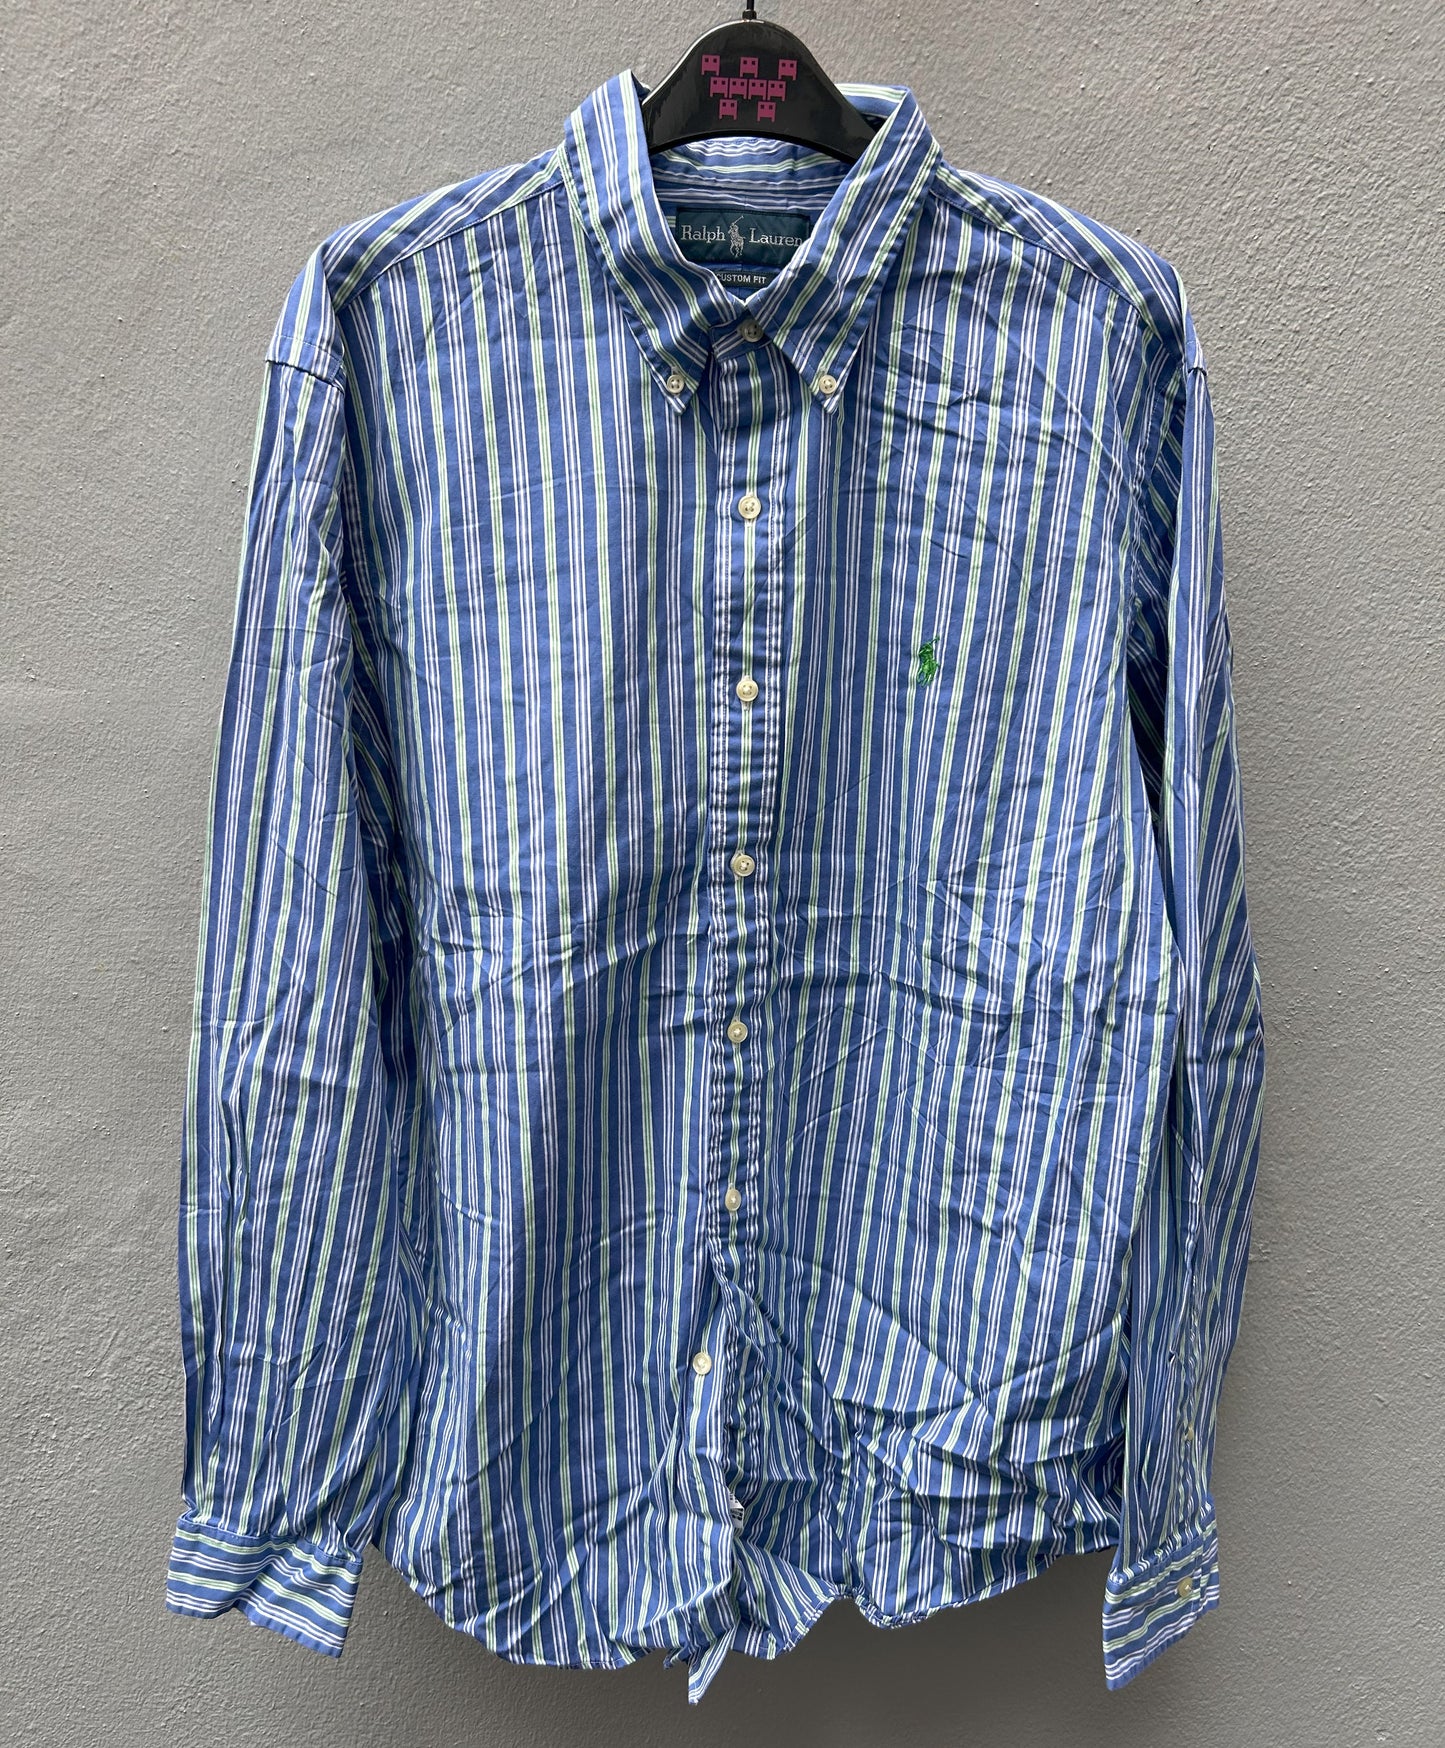 Green/Blue Stripes Ralph Lauren Shirt